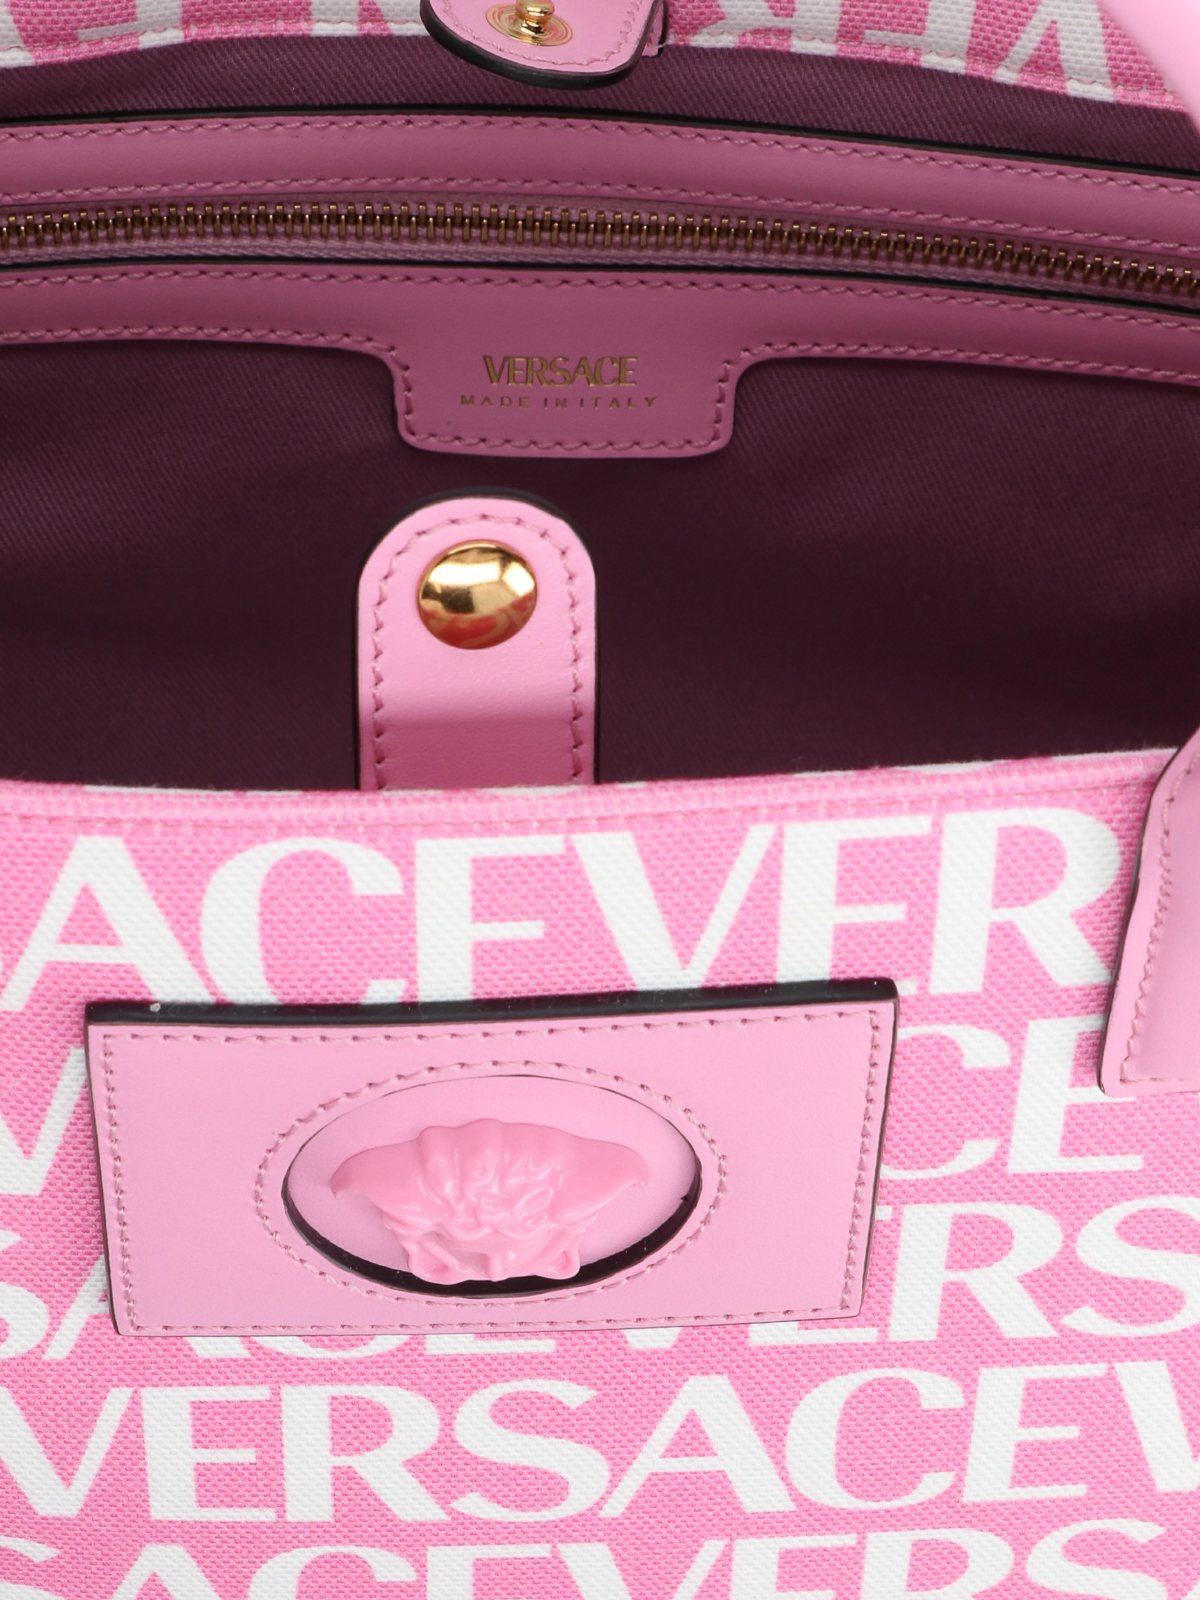 Totes bags Versace - All-over logo-print bag - 10047411A065442P30V